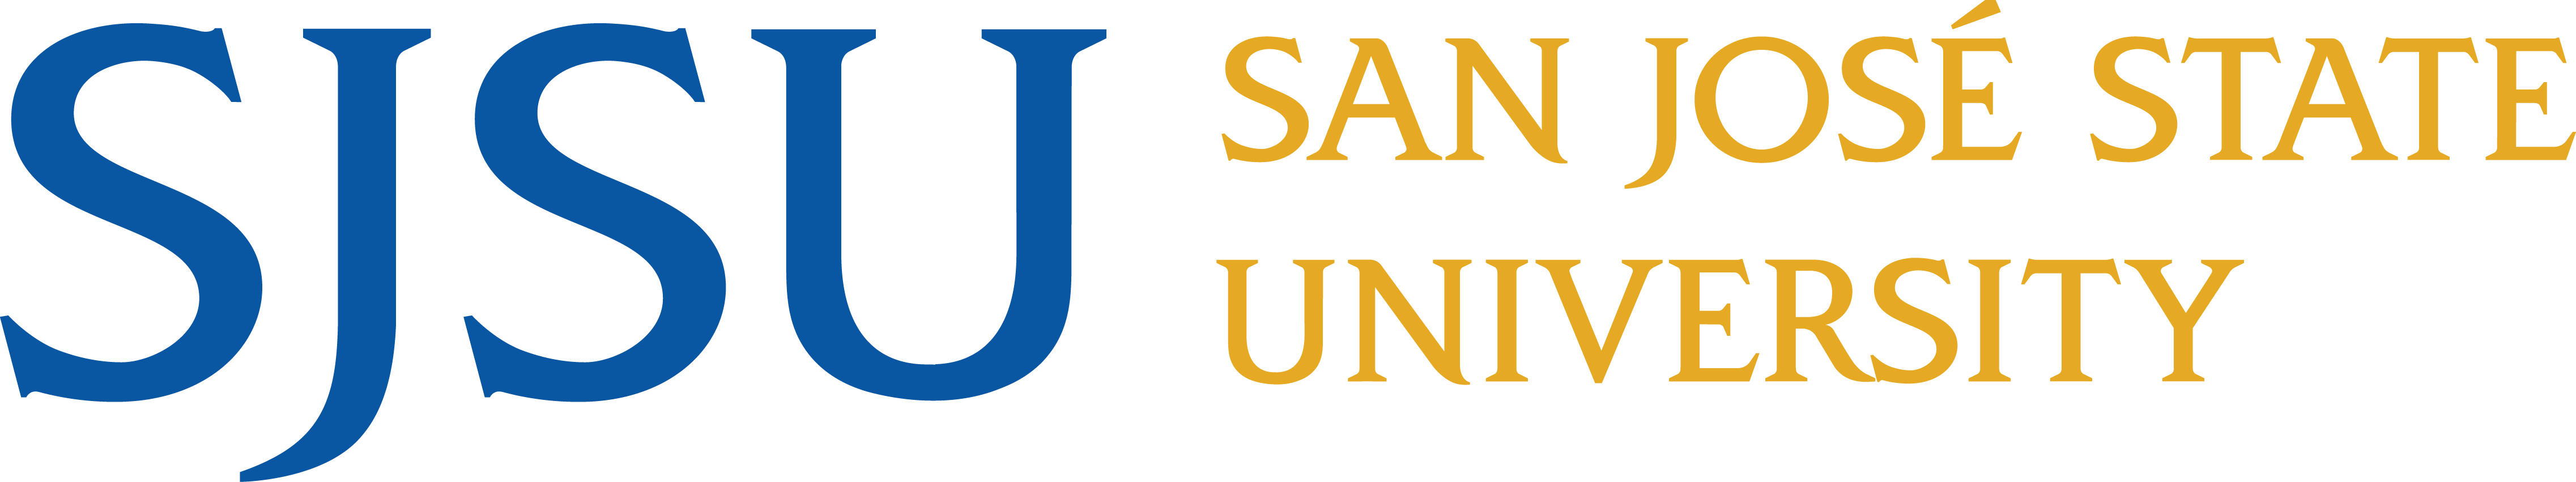 Sjsu Logo - Sjsu San Jose State University Logo (4547x851)